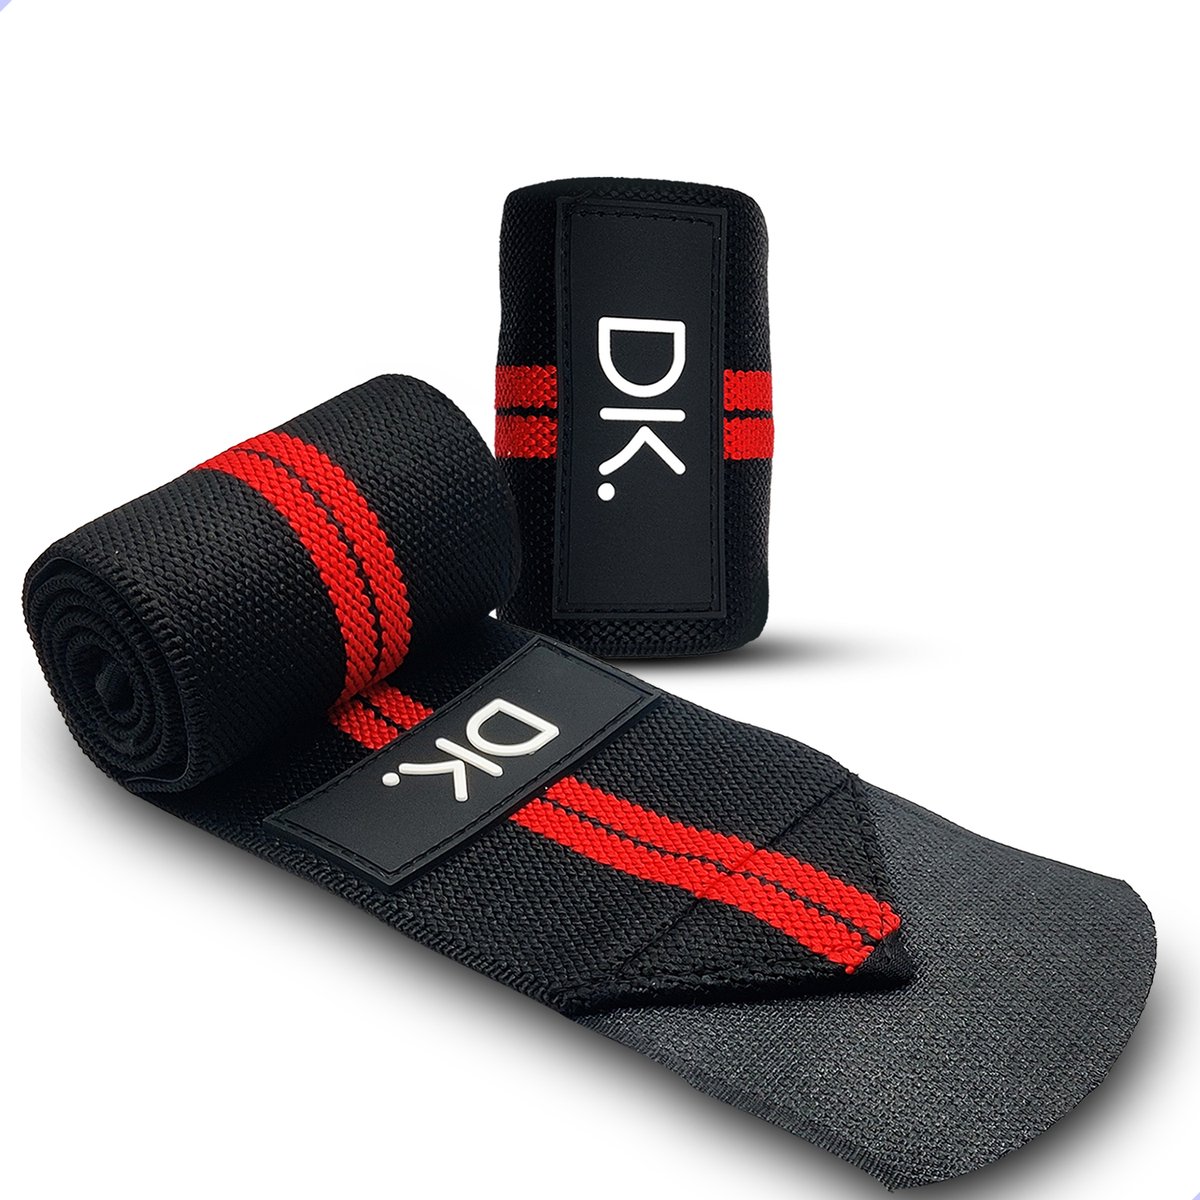 DK.® Wrist Wraps voor Fitness & Crossfit - Polsbanden voor Krachttraining - Polsbrace - Polsbandage - 2 stuks - Rood/Zwart